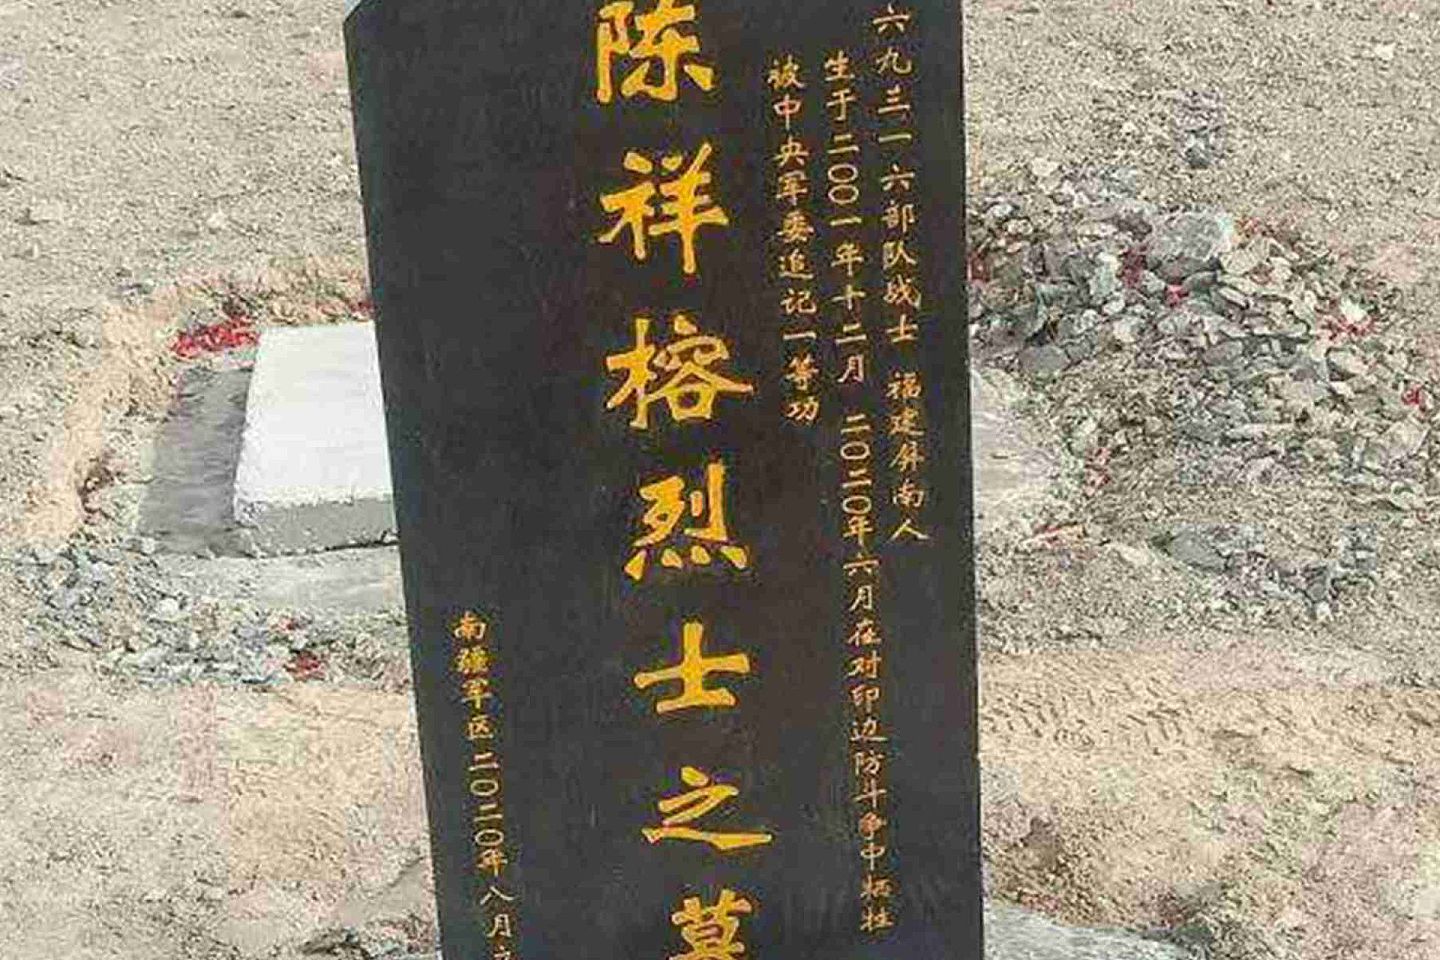 陈祥榕于2020年6月牺牲。图为陈祥榕墓碑。（微博@鼎盛沙龙 ）